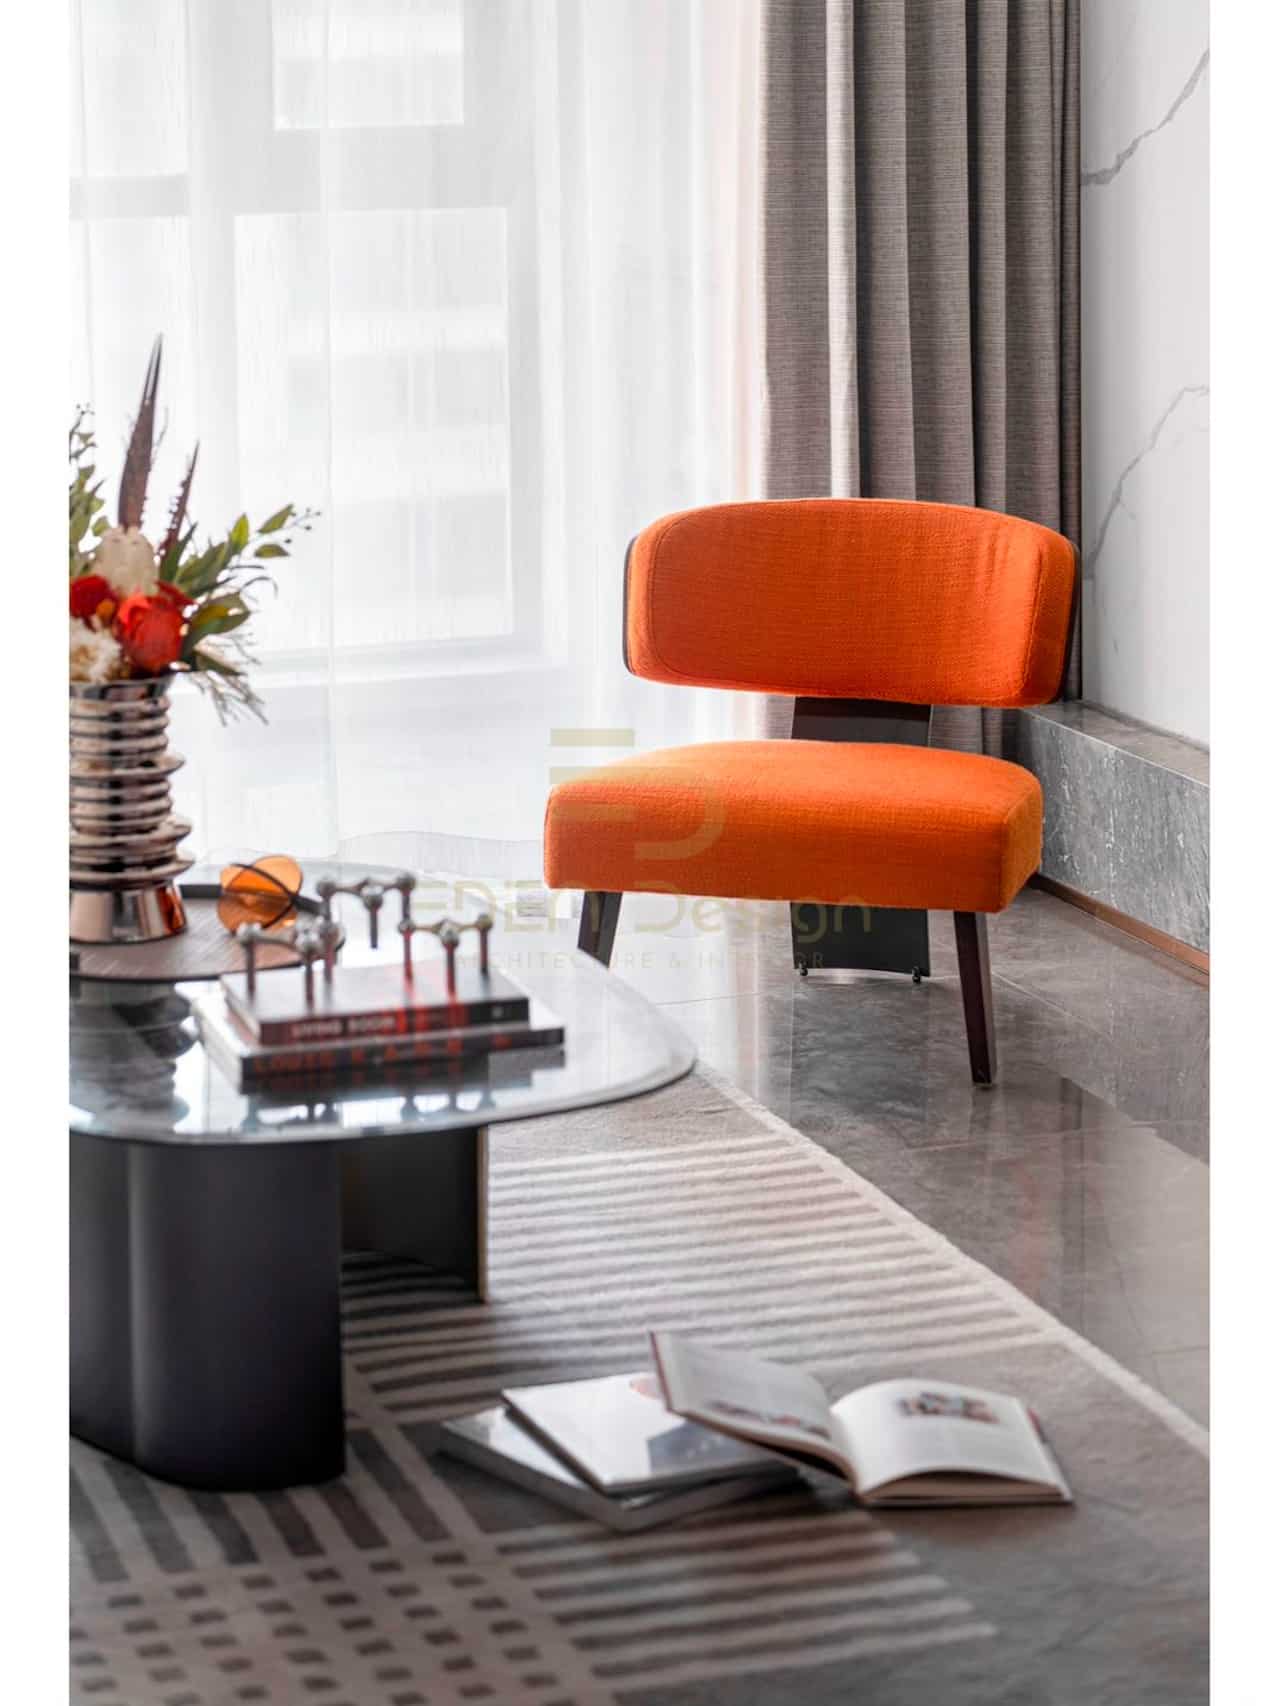 Một chiếc ghế màu cam tạo điểm nhấn ấn tượng cho phòng khách